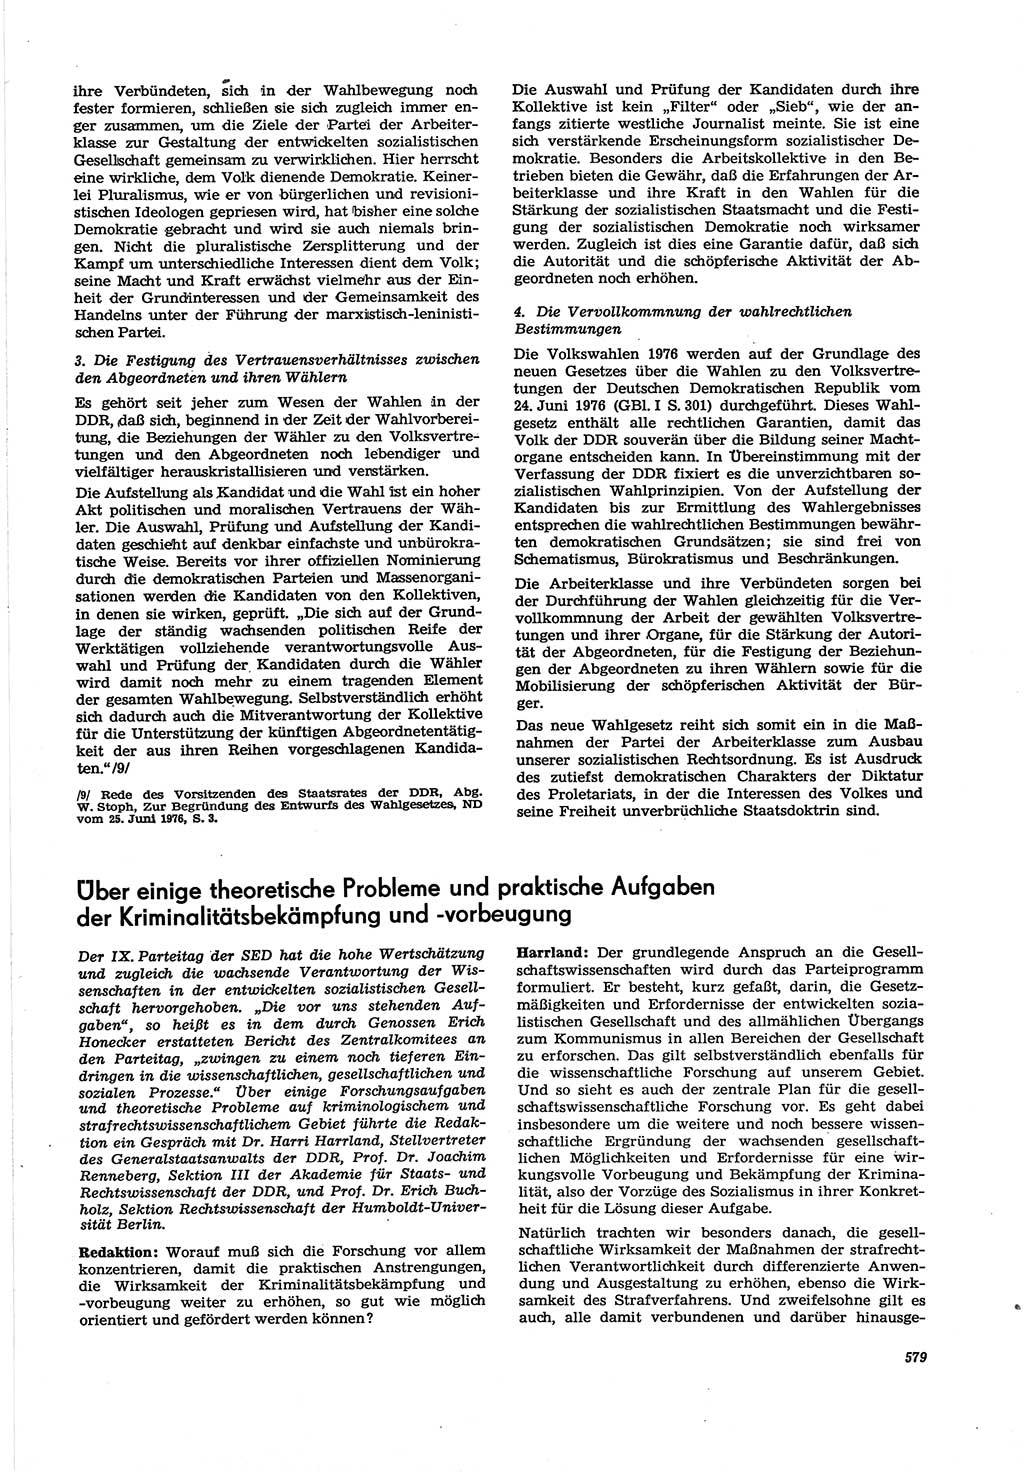 Neue Justiz (NJ), Zeitschrift für Recht und Rechtswissenschaft [Deutsche Demokratische Republik (DDR)], 30. Jahrgang 1976, Seite 579 (NJ DDR 1976, S. 579)